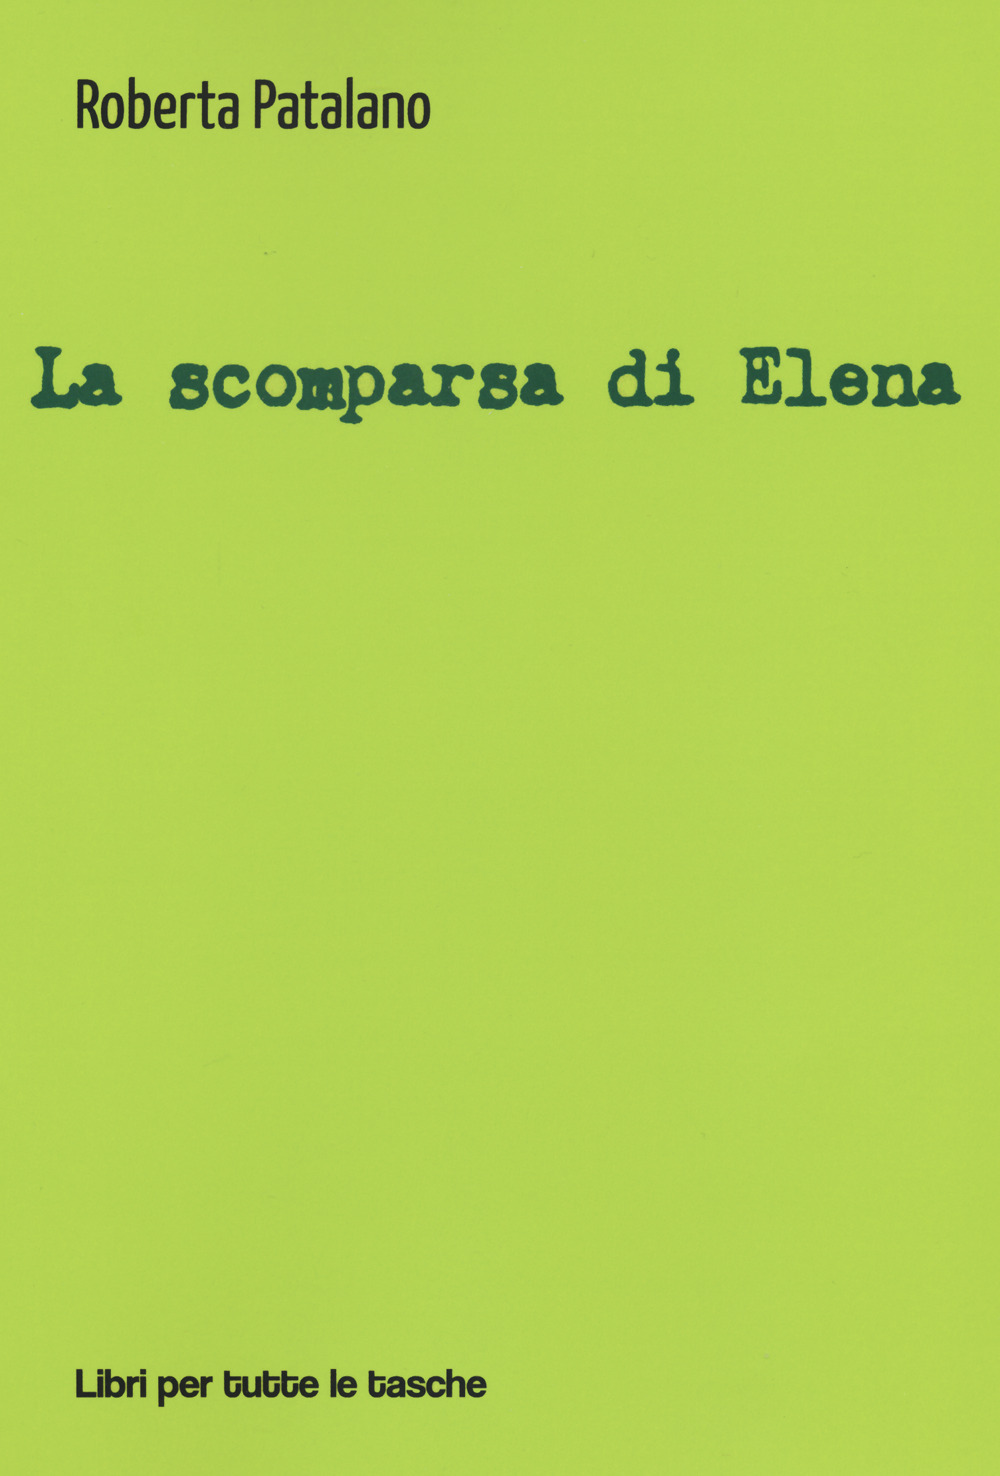 La scomparsa di Elena